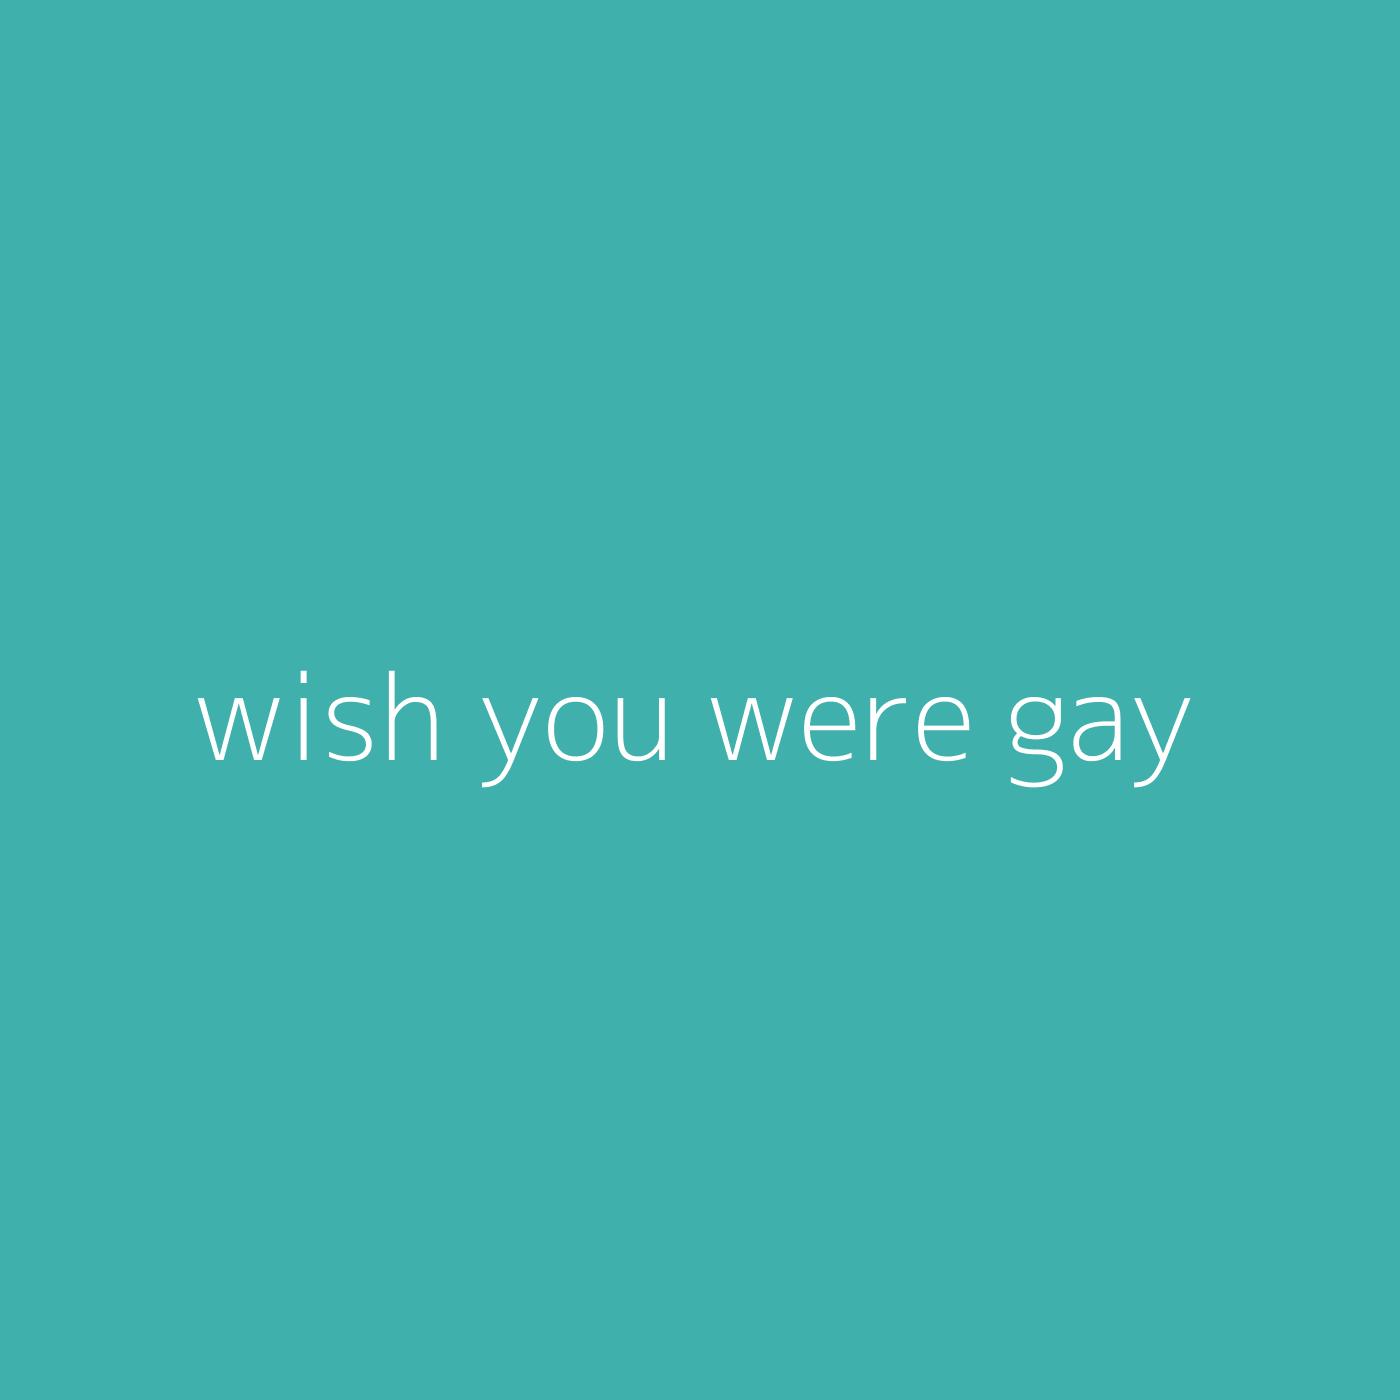 wish you were gay – Billie Eilish